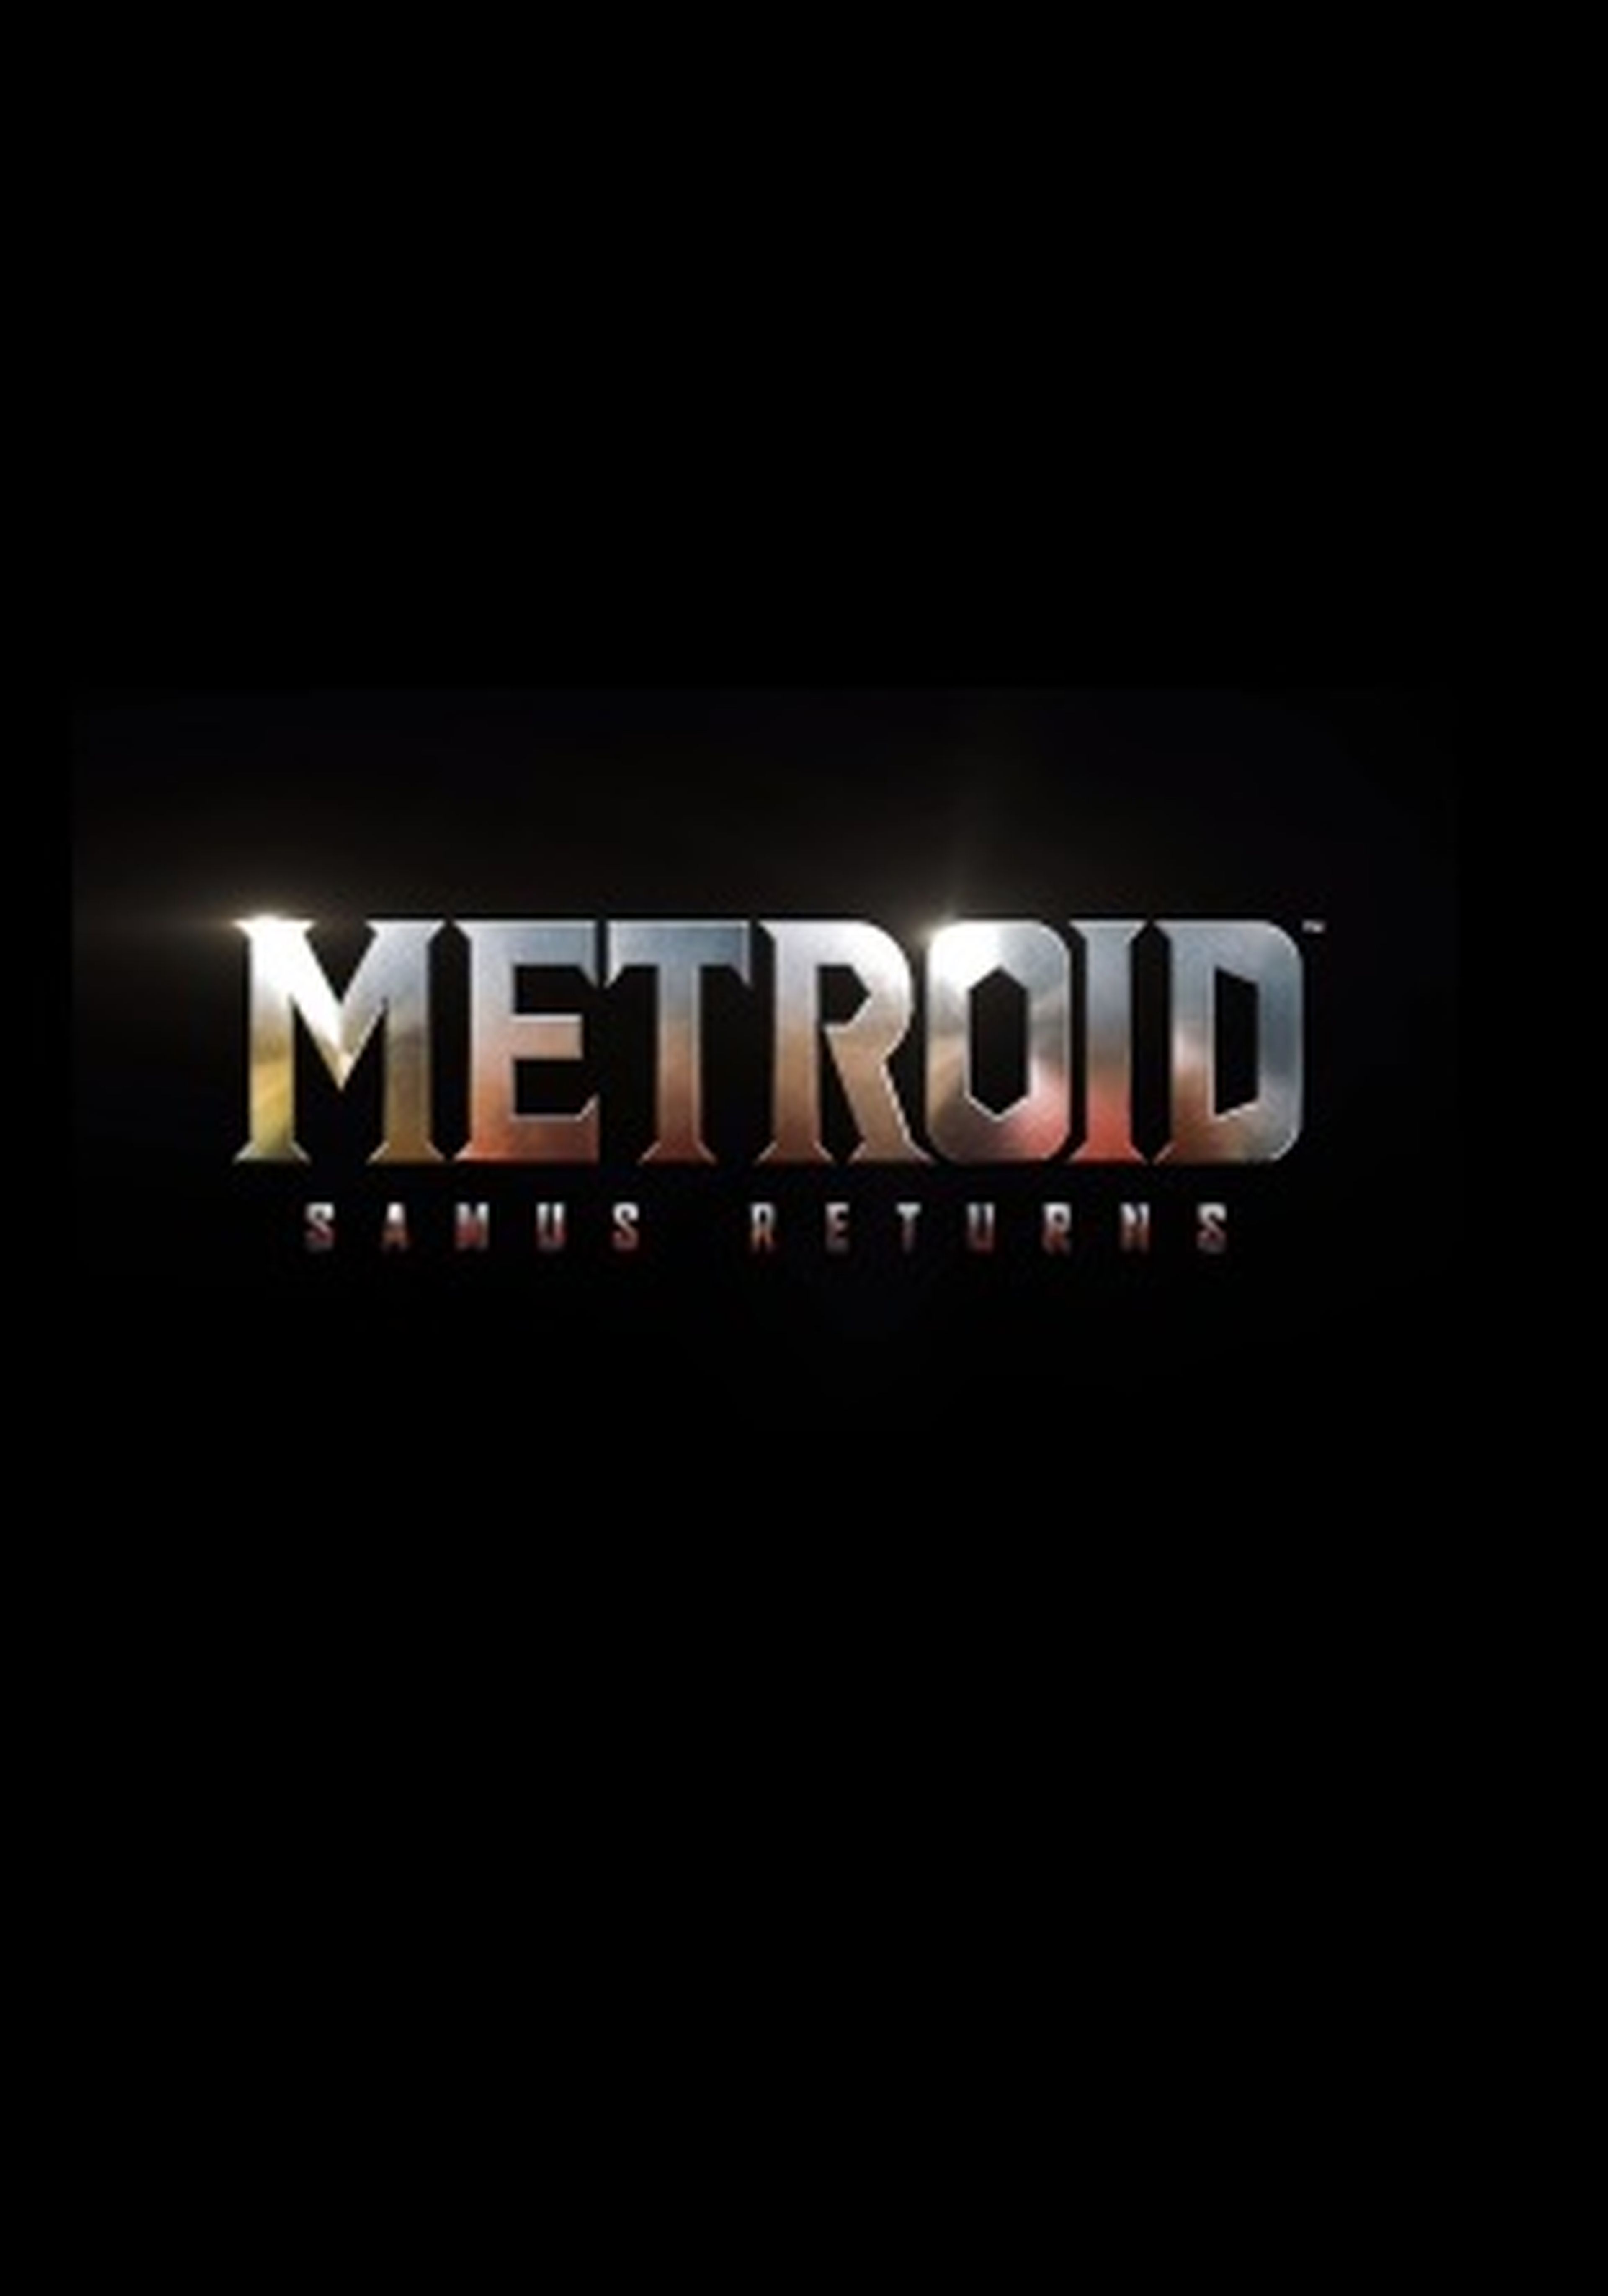 Metroid samus returns portada